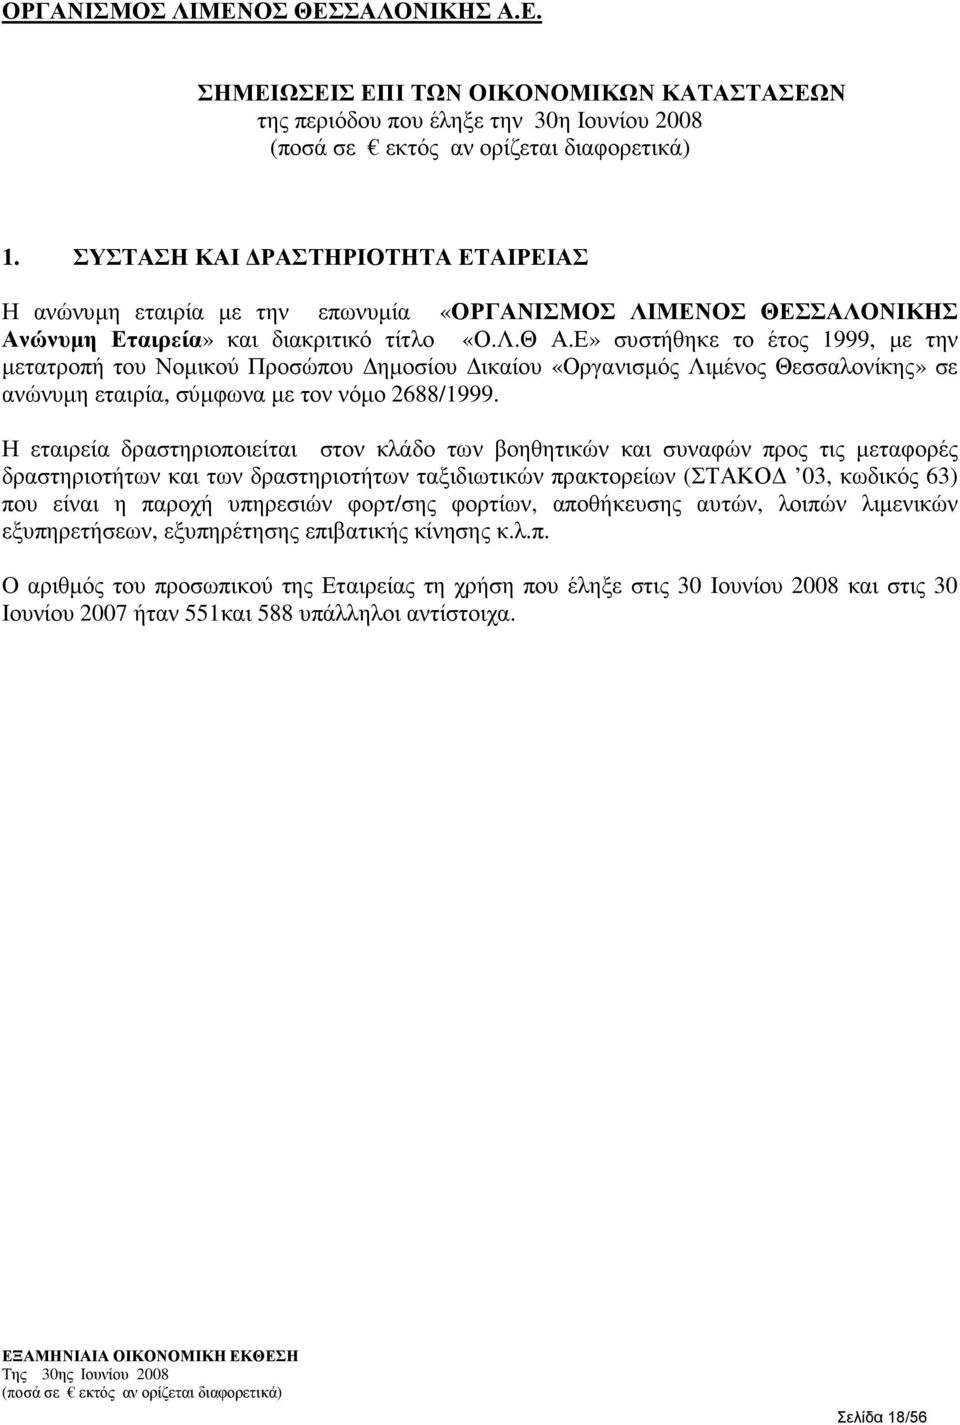 Ε» συστήθηκε το έτος 1999, µε την µετατροπή του Νοµικού Προσώπου ηµοσίου ικαίου «Οργανισµός Λιµένος Θεσσαλονίκης» σε ανώνυµη εταιρία, σύµφωνα µε τον νόµο 2688/1999.